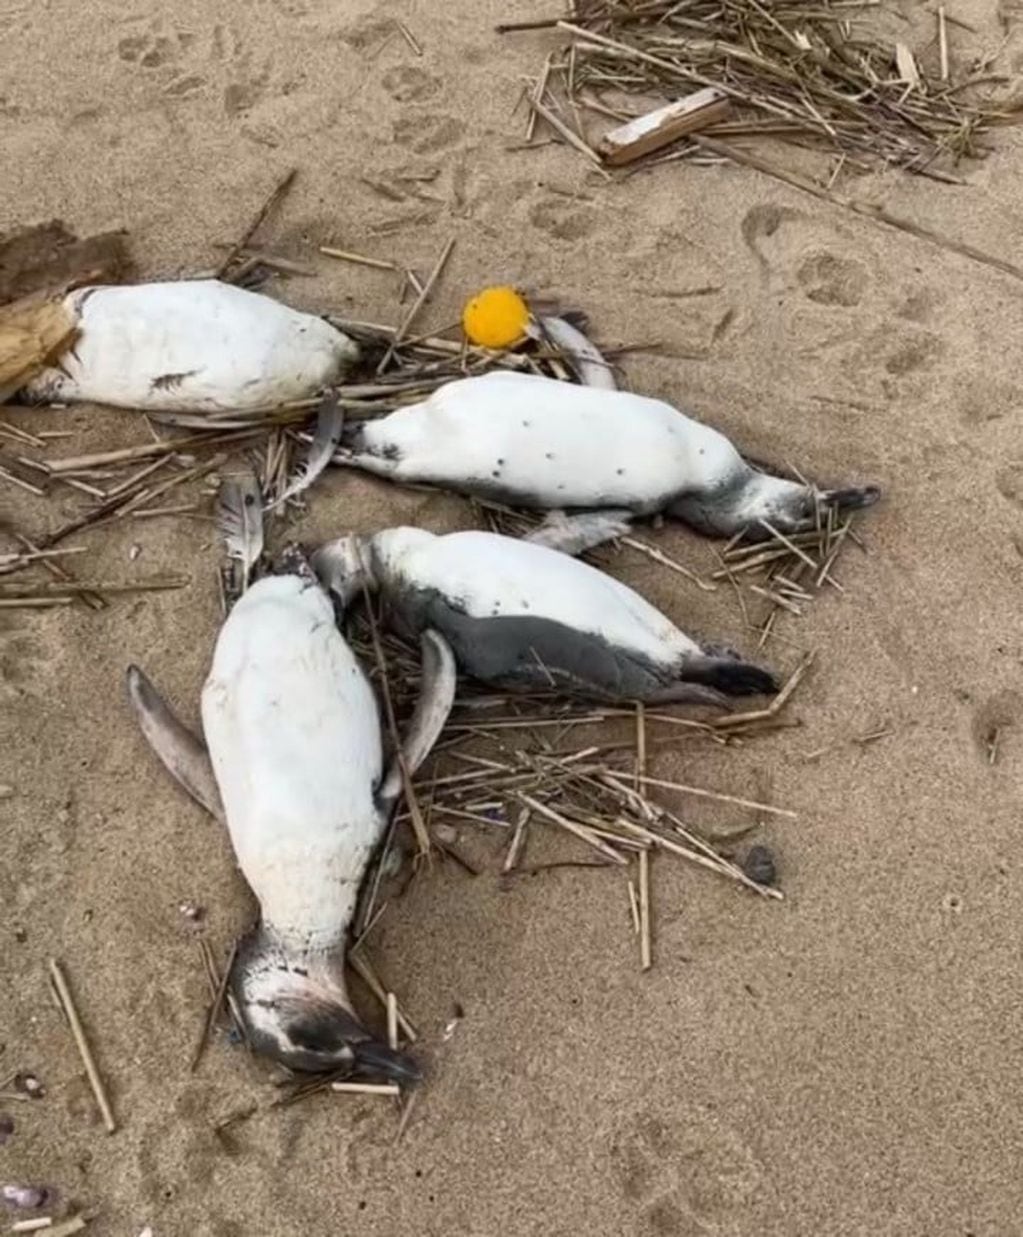 Unos 2.000 pingüinos aparecen muertos en las costas de Uruguay